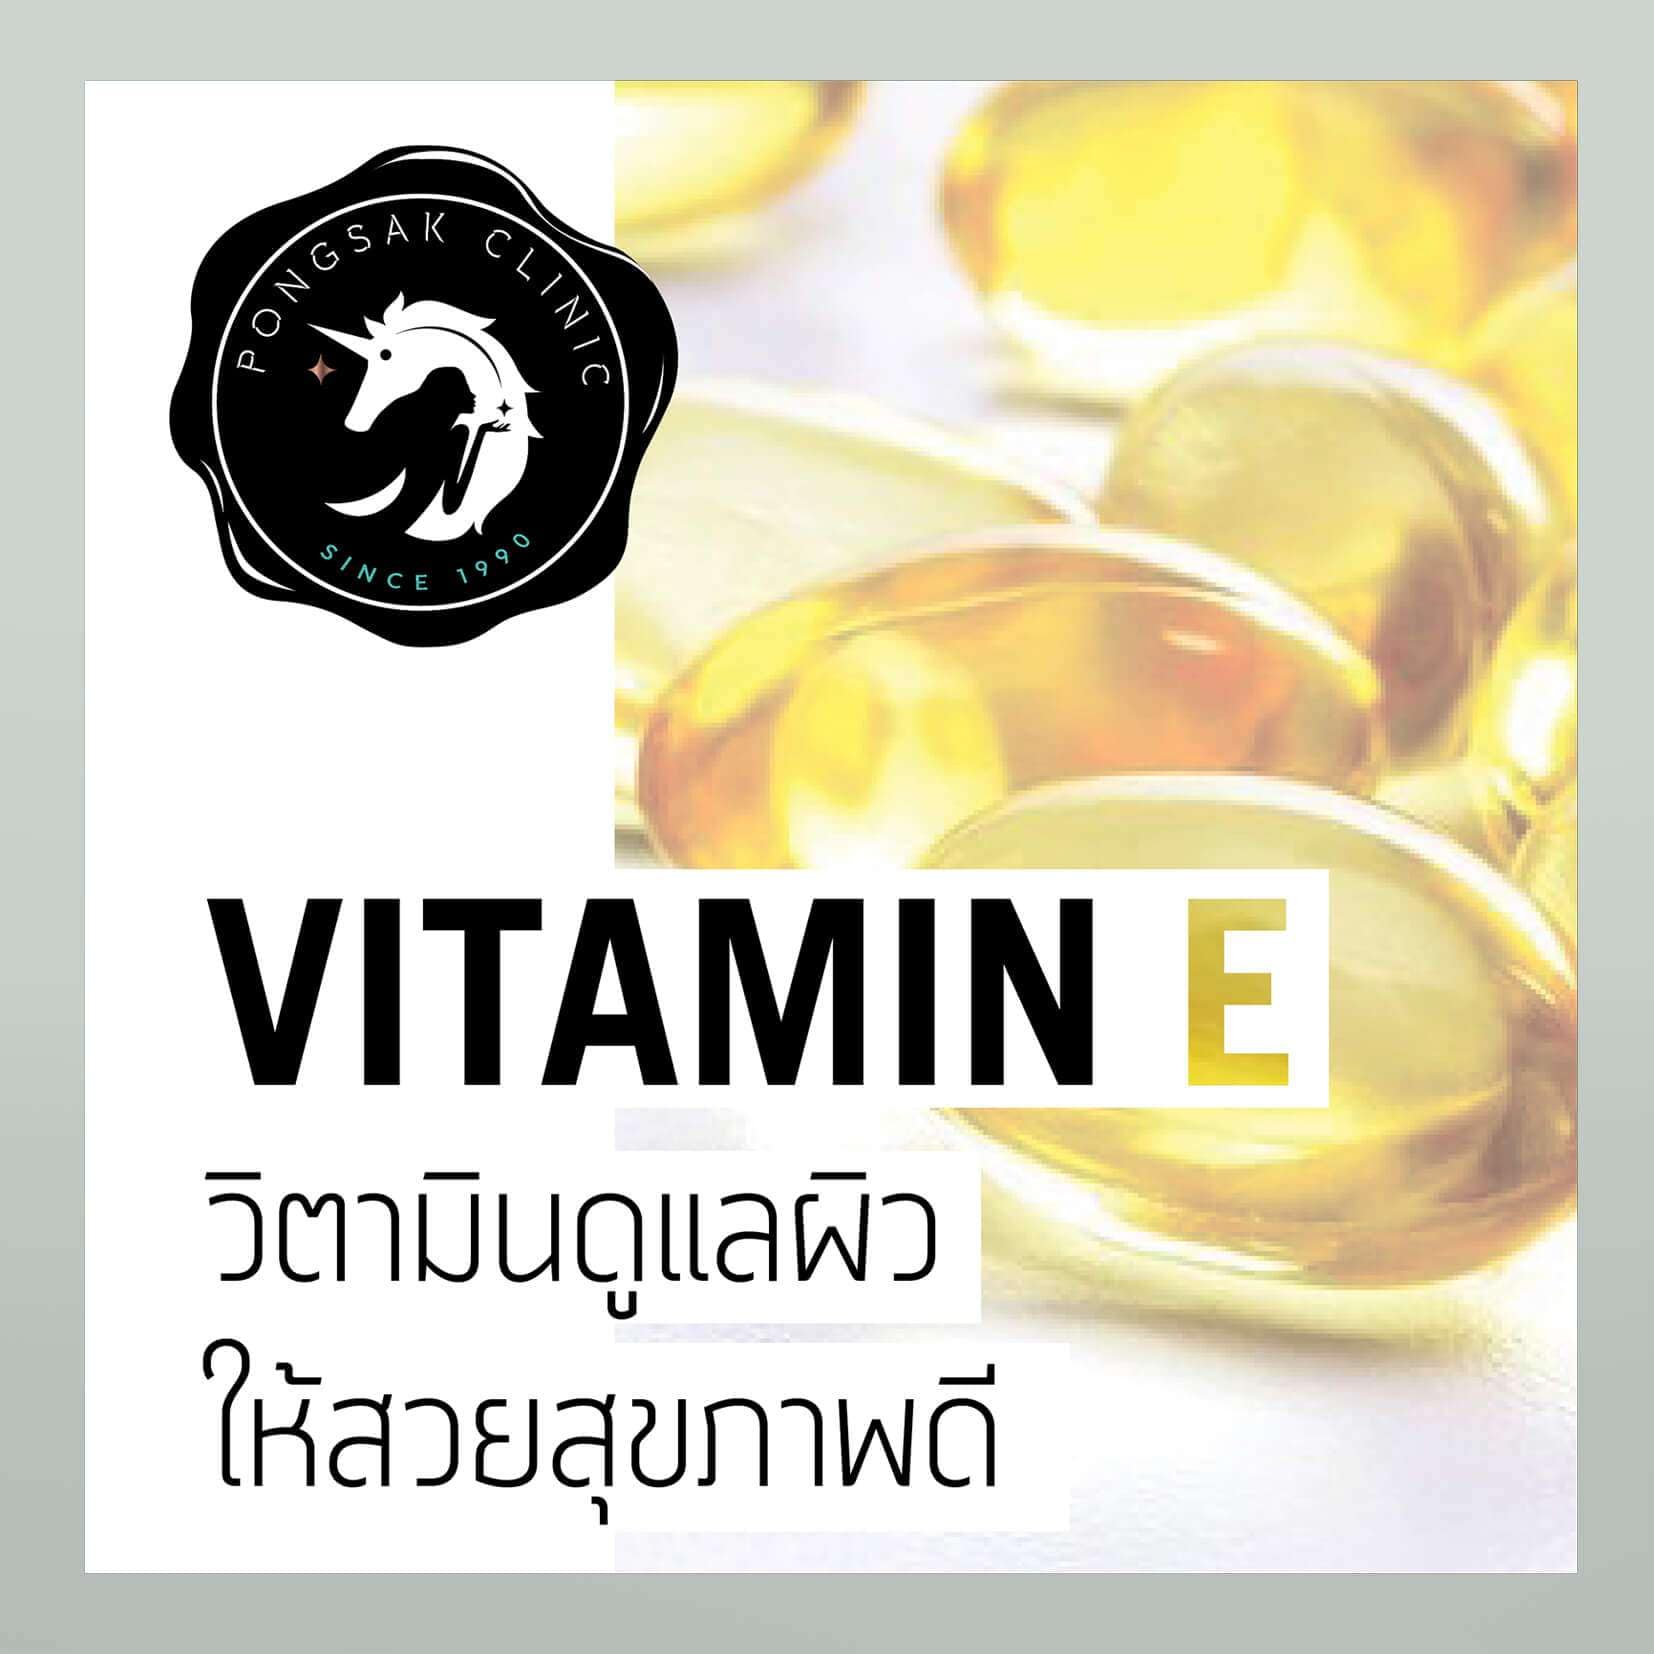 Vitamin E วิตามินดูแลผิวให้สวยสุขภาพดี